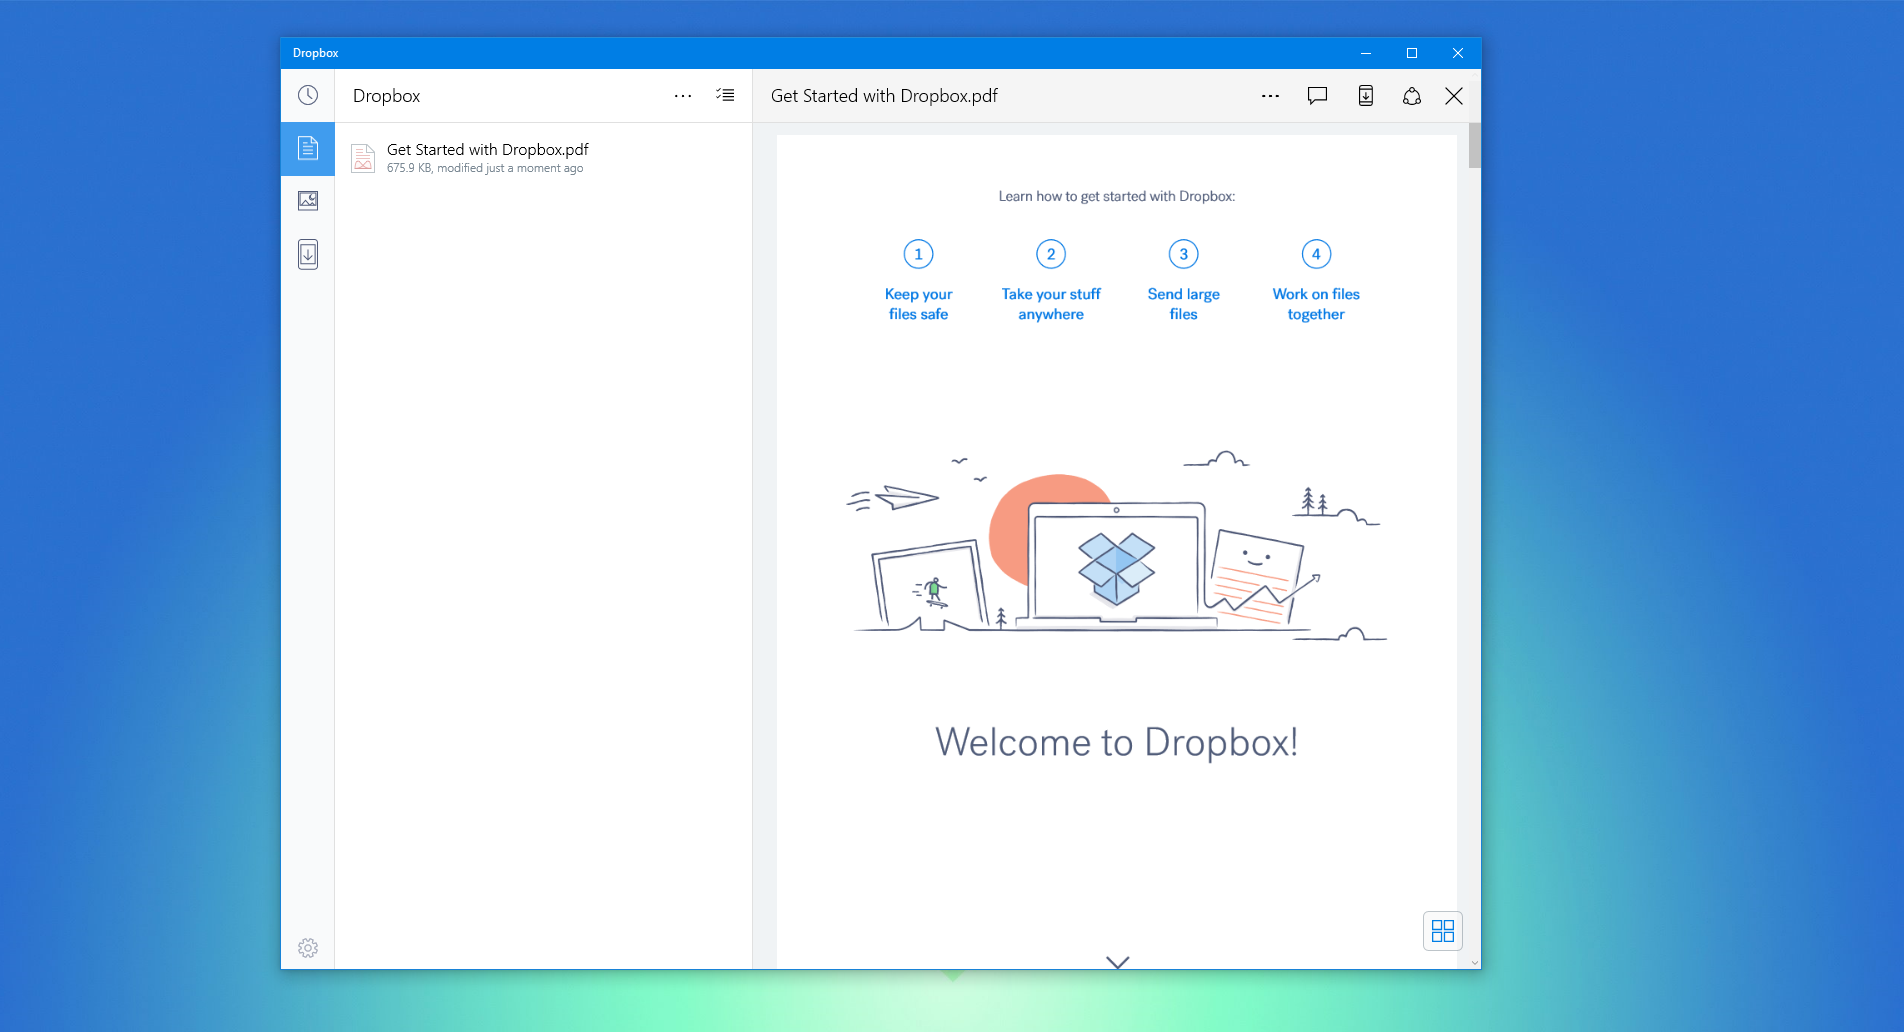 Dropbox for Windows 10 gets a minor update - MSPoweruser